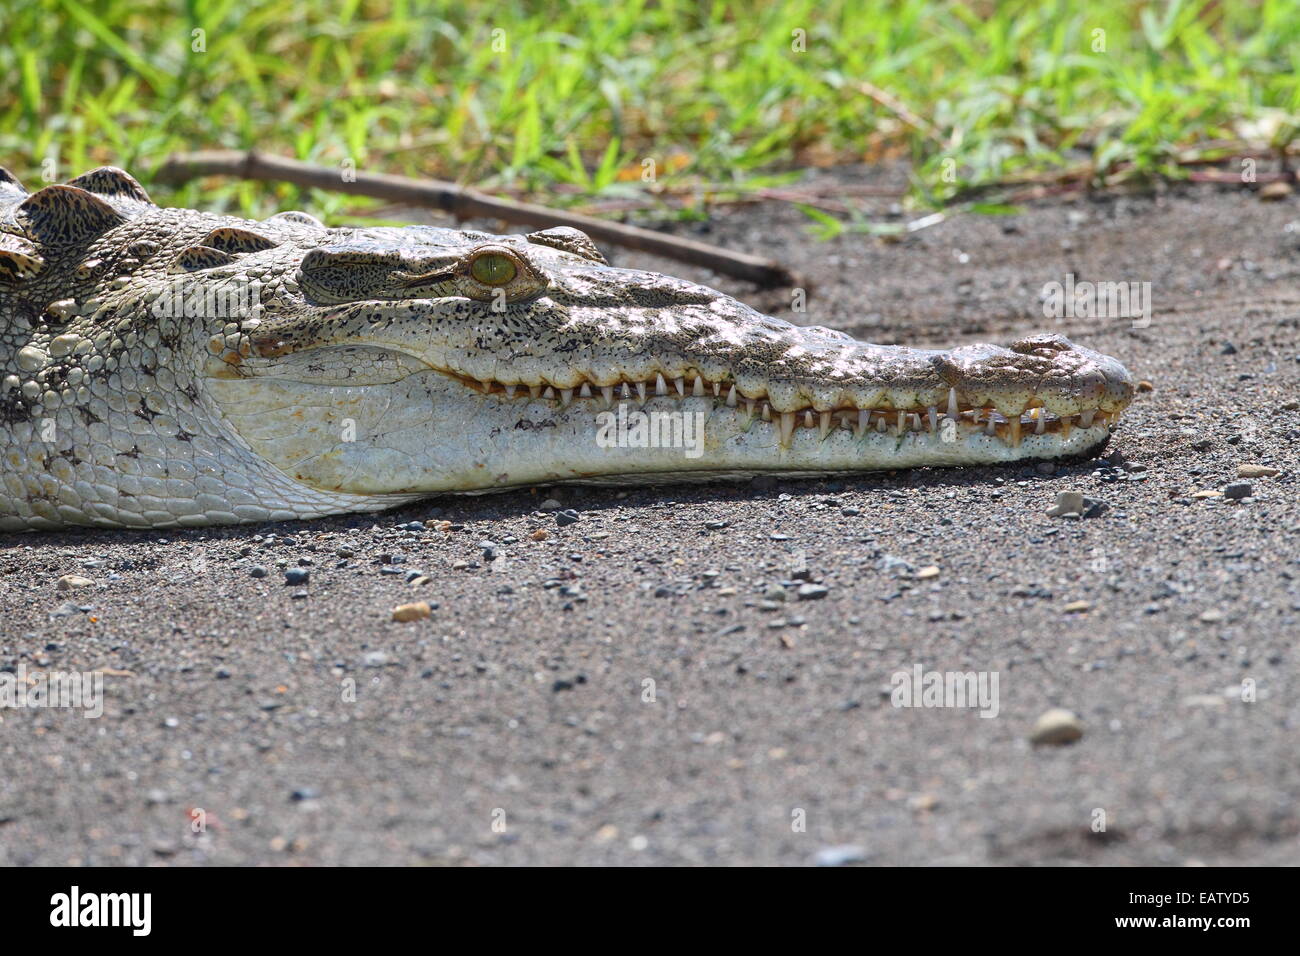 Un coccodrillo americano, Crocodylus acutus, crogiolarvi al sole su un banco di sabbia. Foto Stock